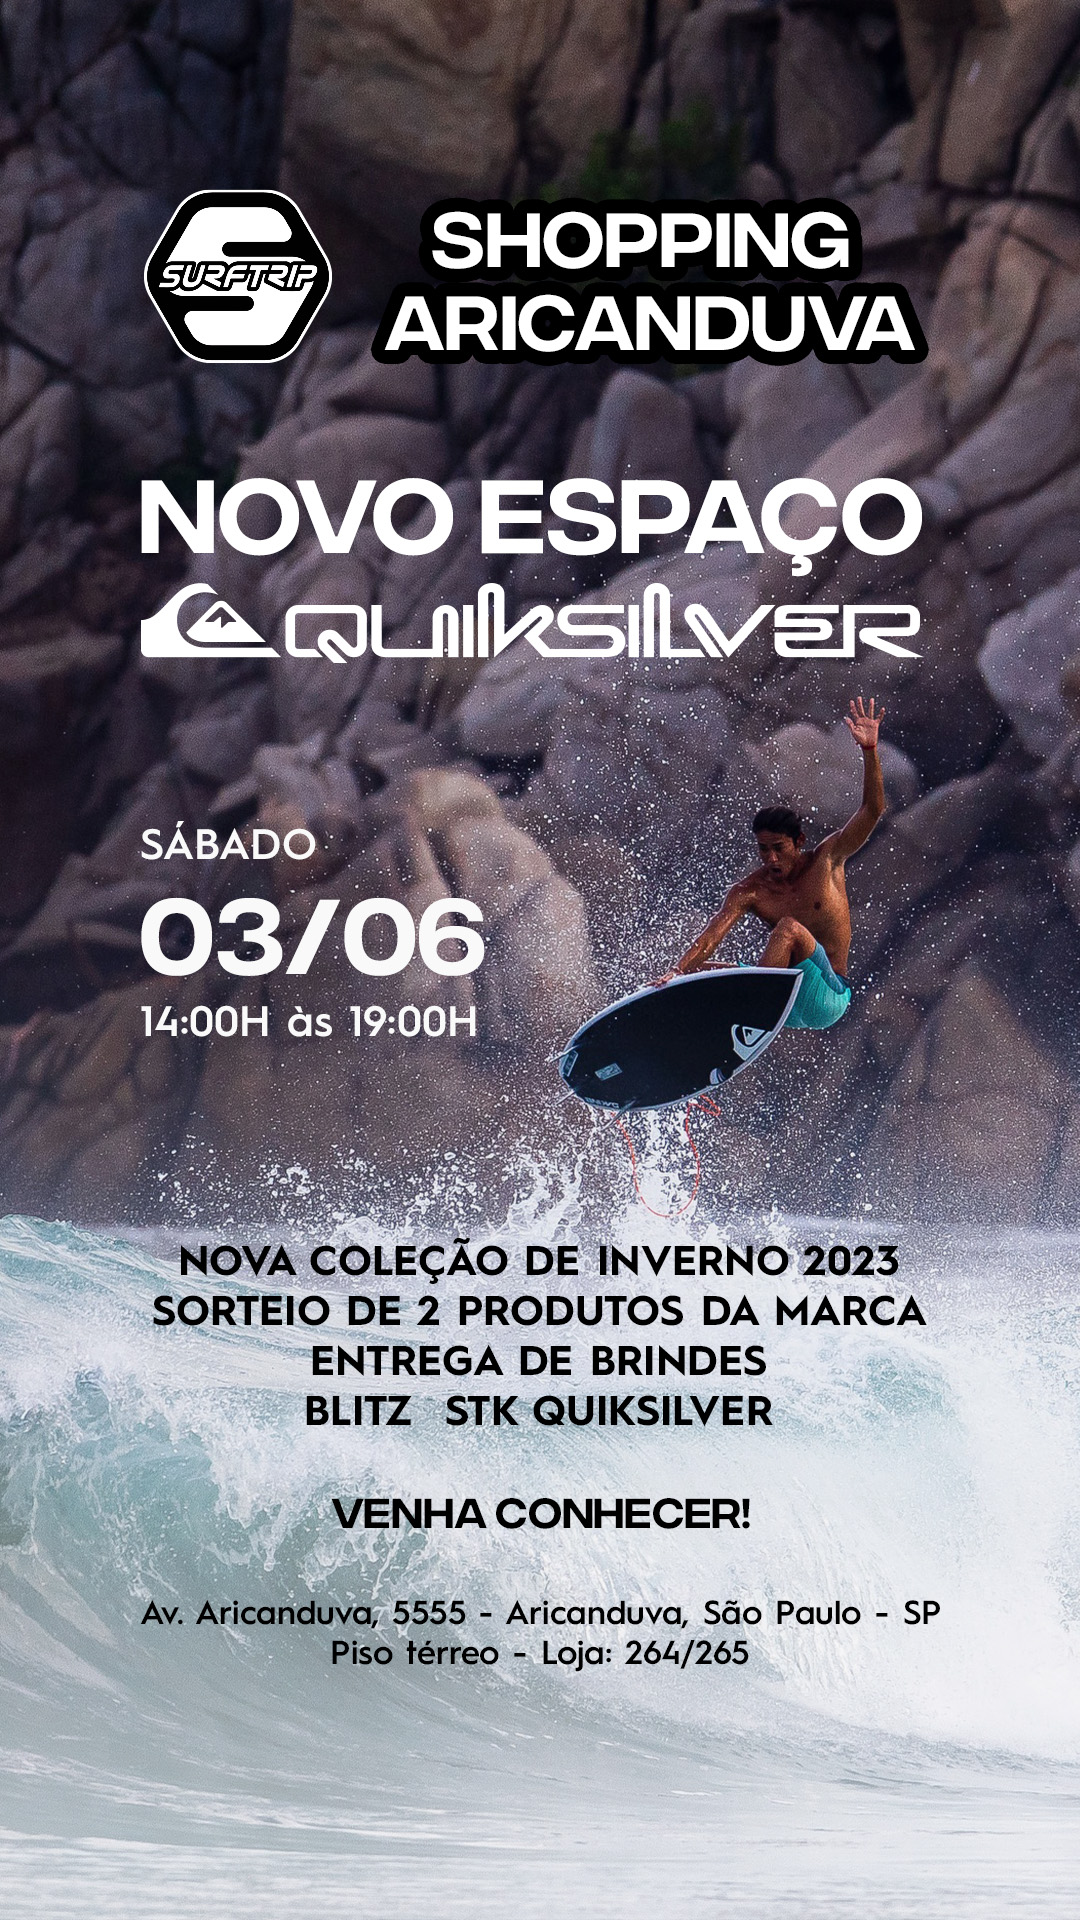 Flyer do evento de inauguração do espaço Quiksilver na Surf Trip do Shopping Aricanduva.